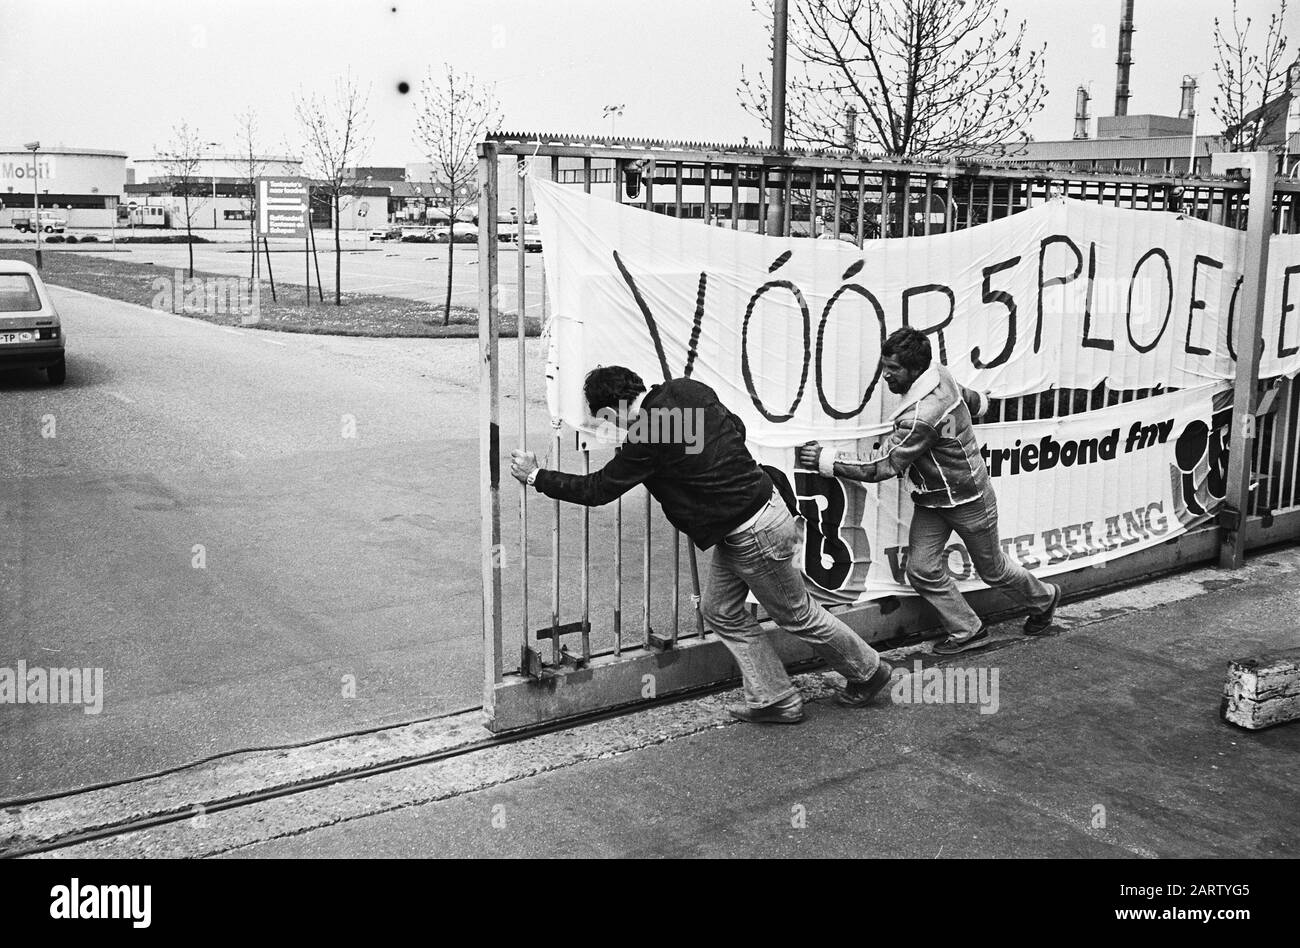 Streik bei Mobil Oil in Amsterdam für die Einstellung von 5 Schichten; das geschlossene Tor mit Bannerdatum: 6. Mai 1980 Standort: Amsterdam, Noord-Holland Schlüsselwörter: Streiks, Banner Name Der Institution: Mobil Oil Stockfoto